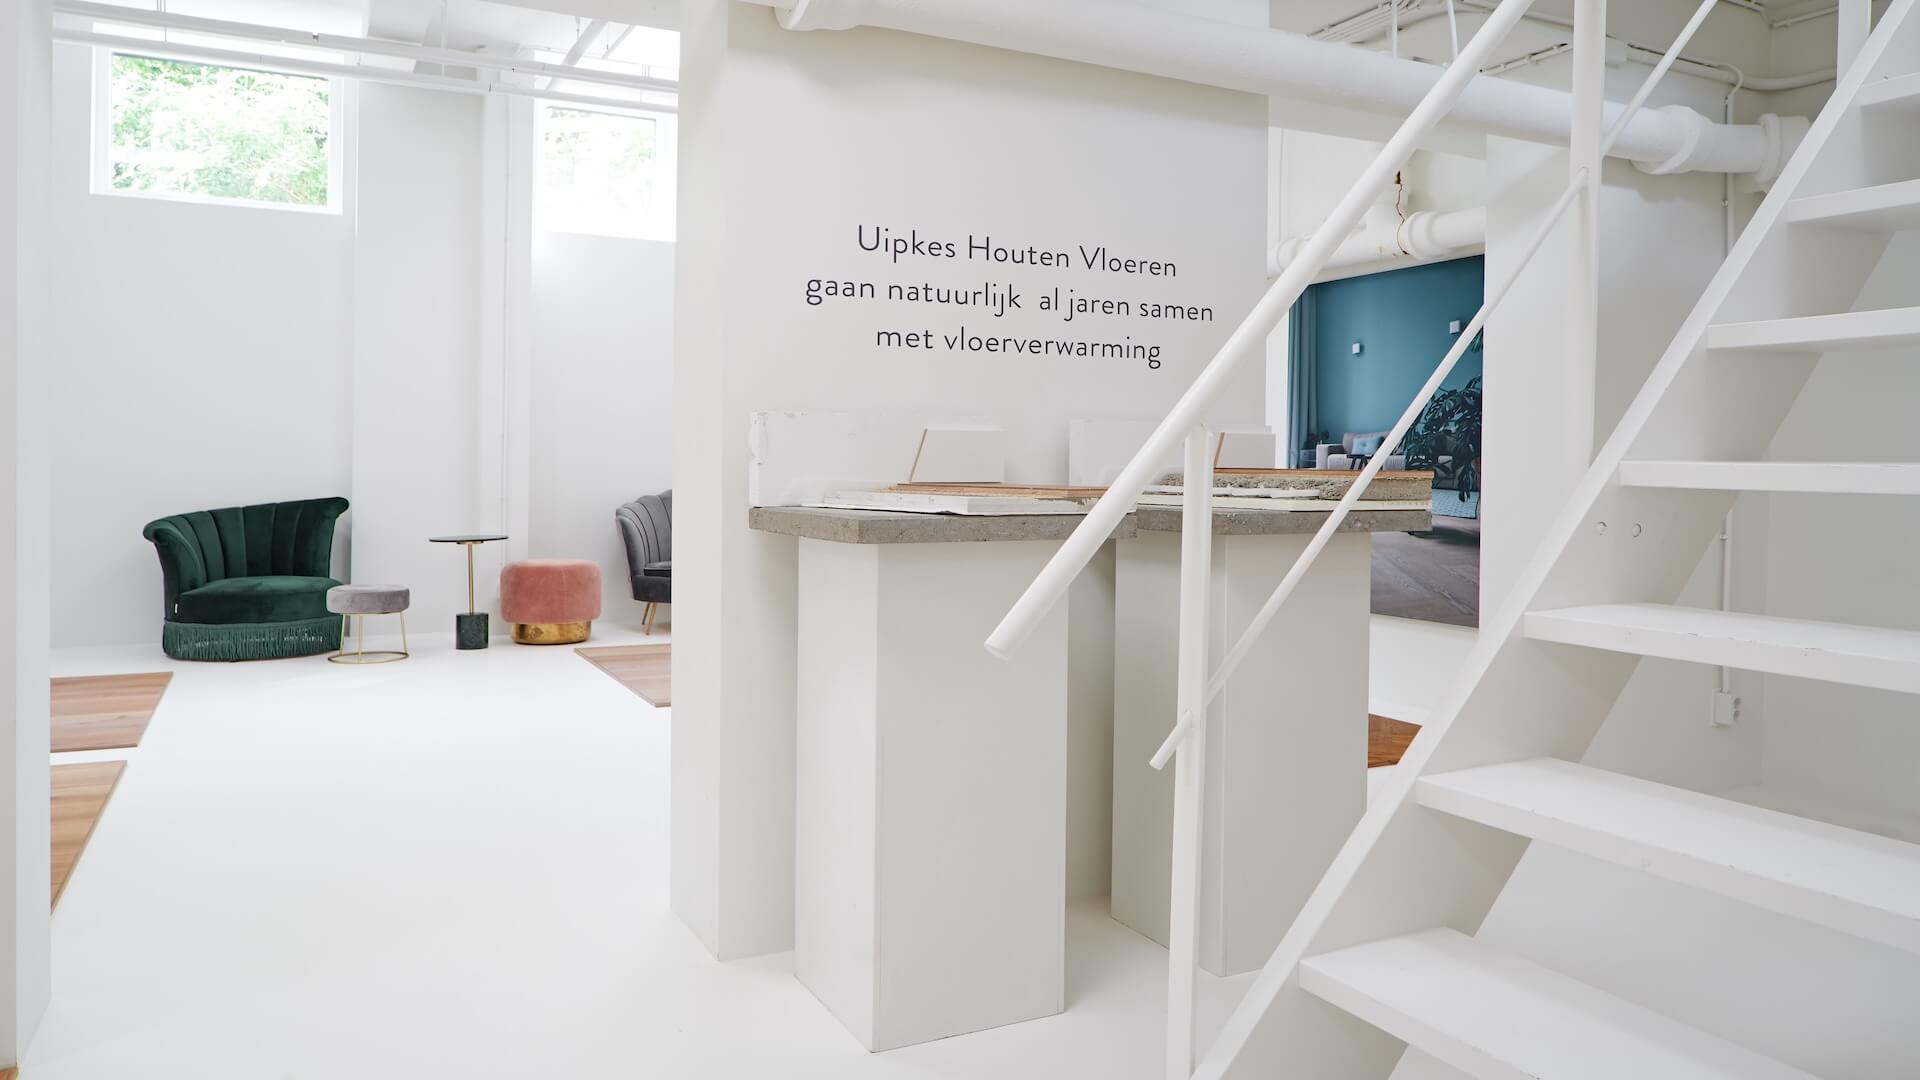 Houten vloeren op vloerverwarming in showroom van Uipkes in Amsterdam